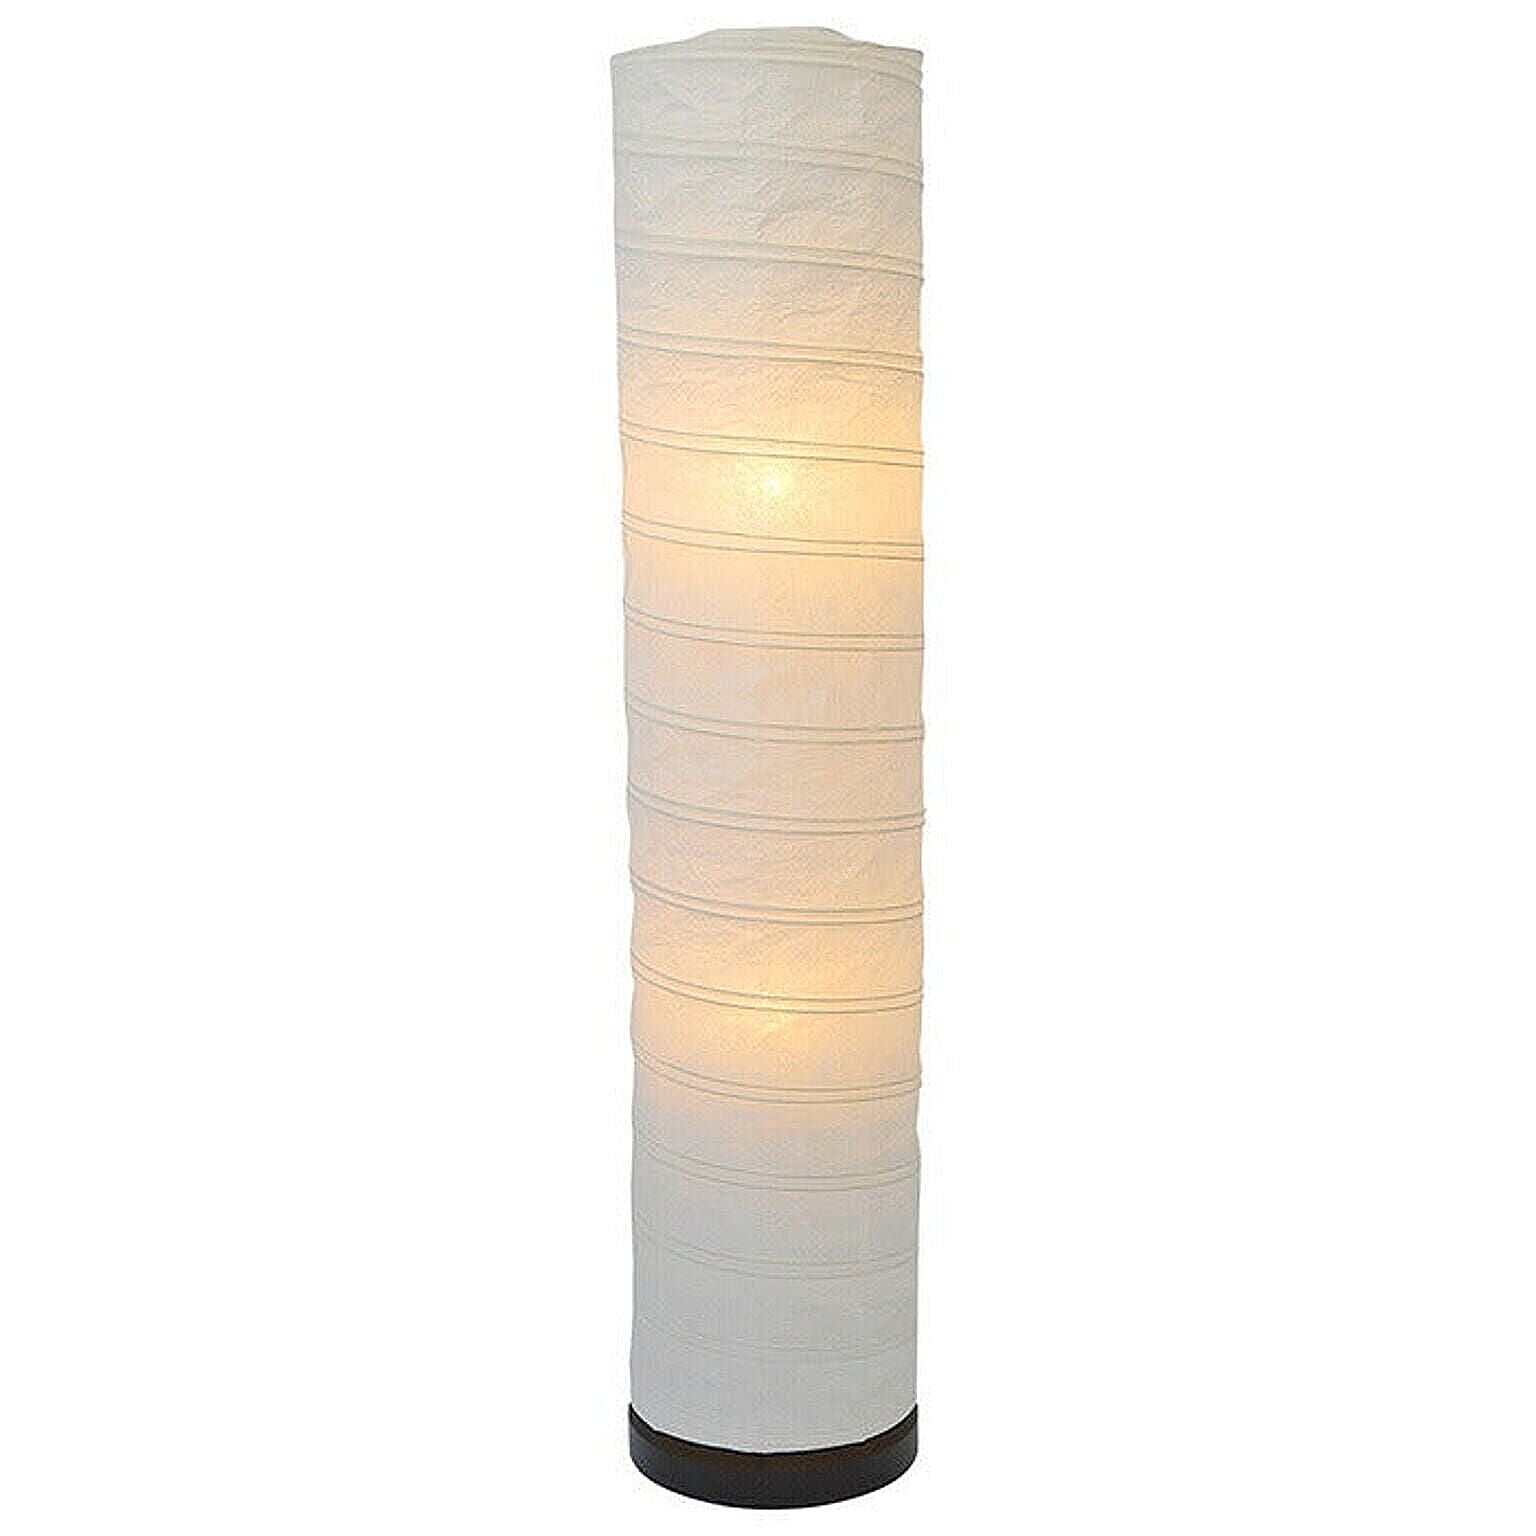 フロアライト 和紙 spiral 揉み紙 電球付属 幅220x奥行220x高さ1040mm 彩光デザイン